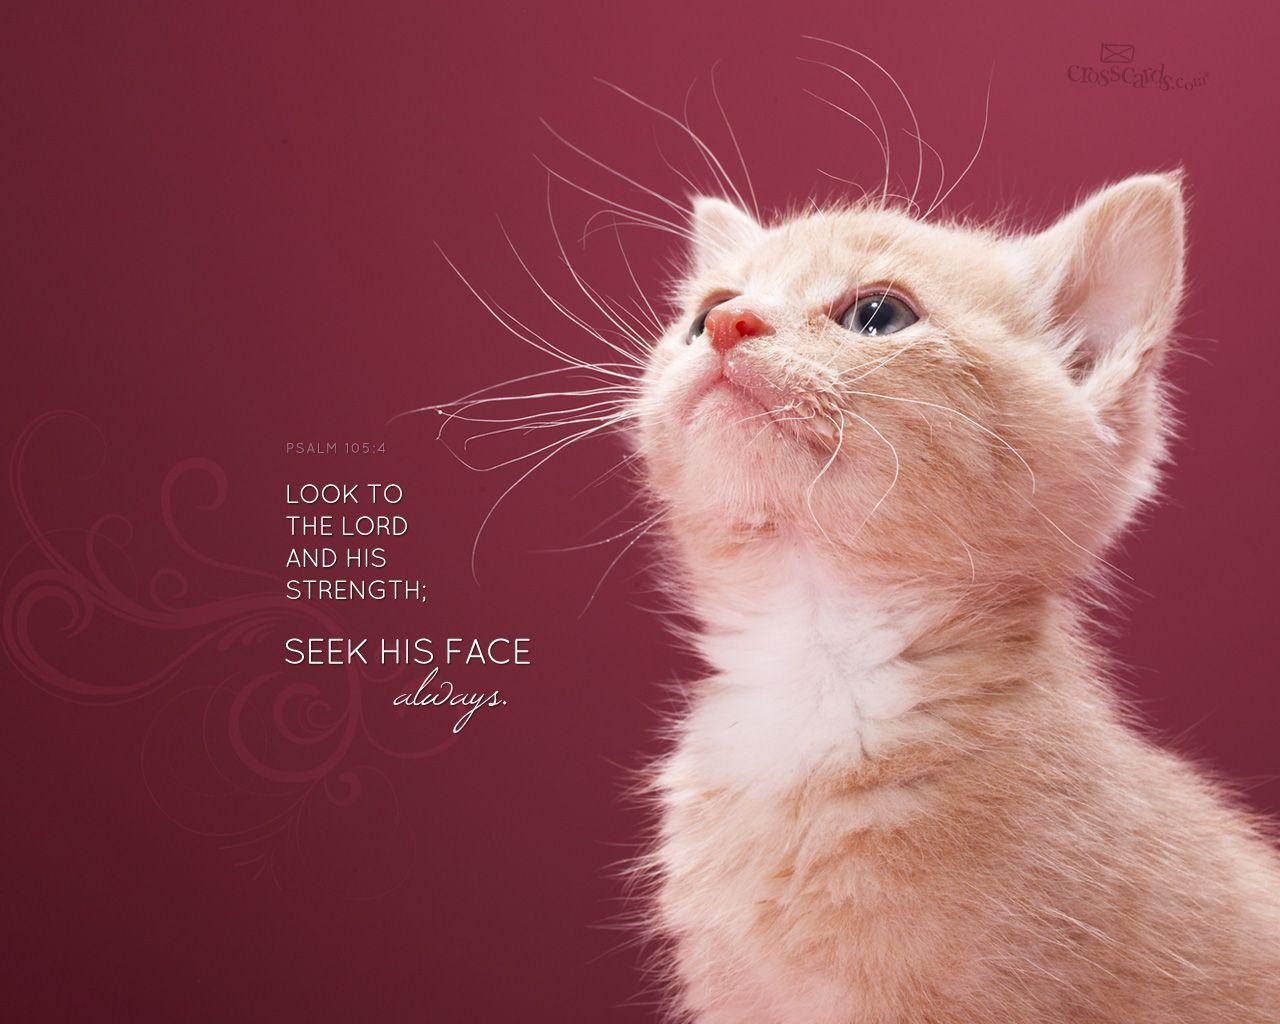 Christian Desktop Wallpaper 1280 x 1024. Animals, Cute cats